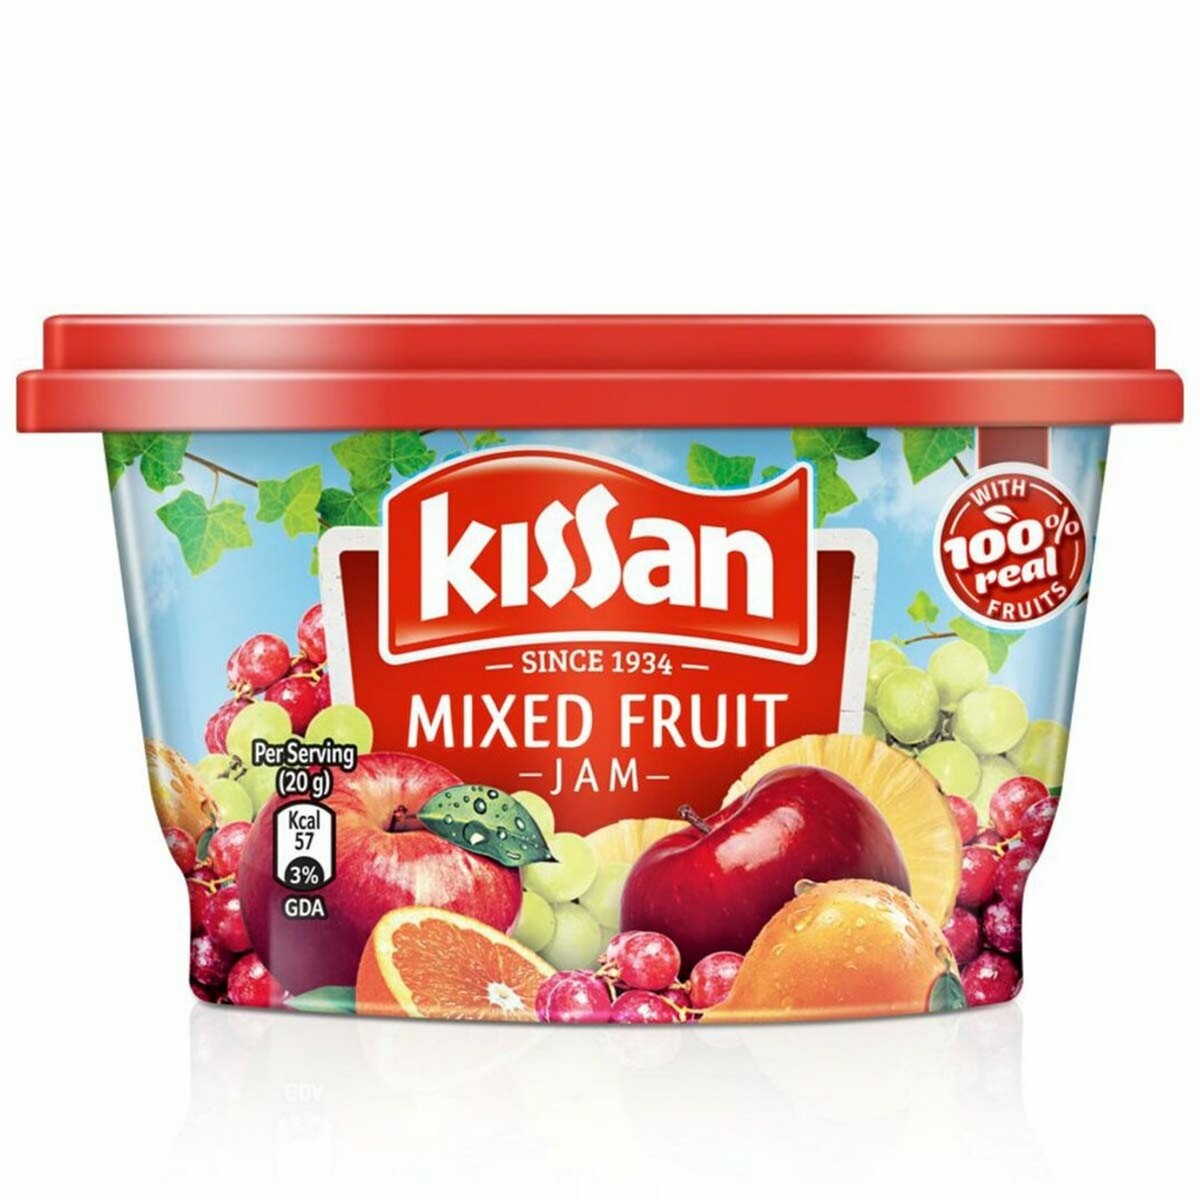 Kissan Mixed Fruit Jam 90g